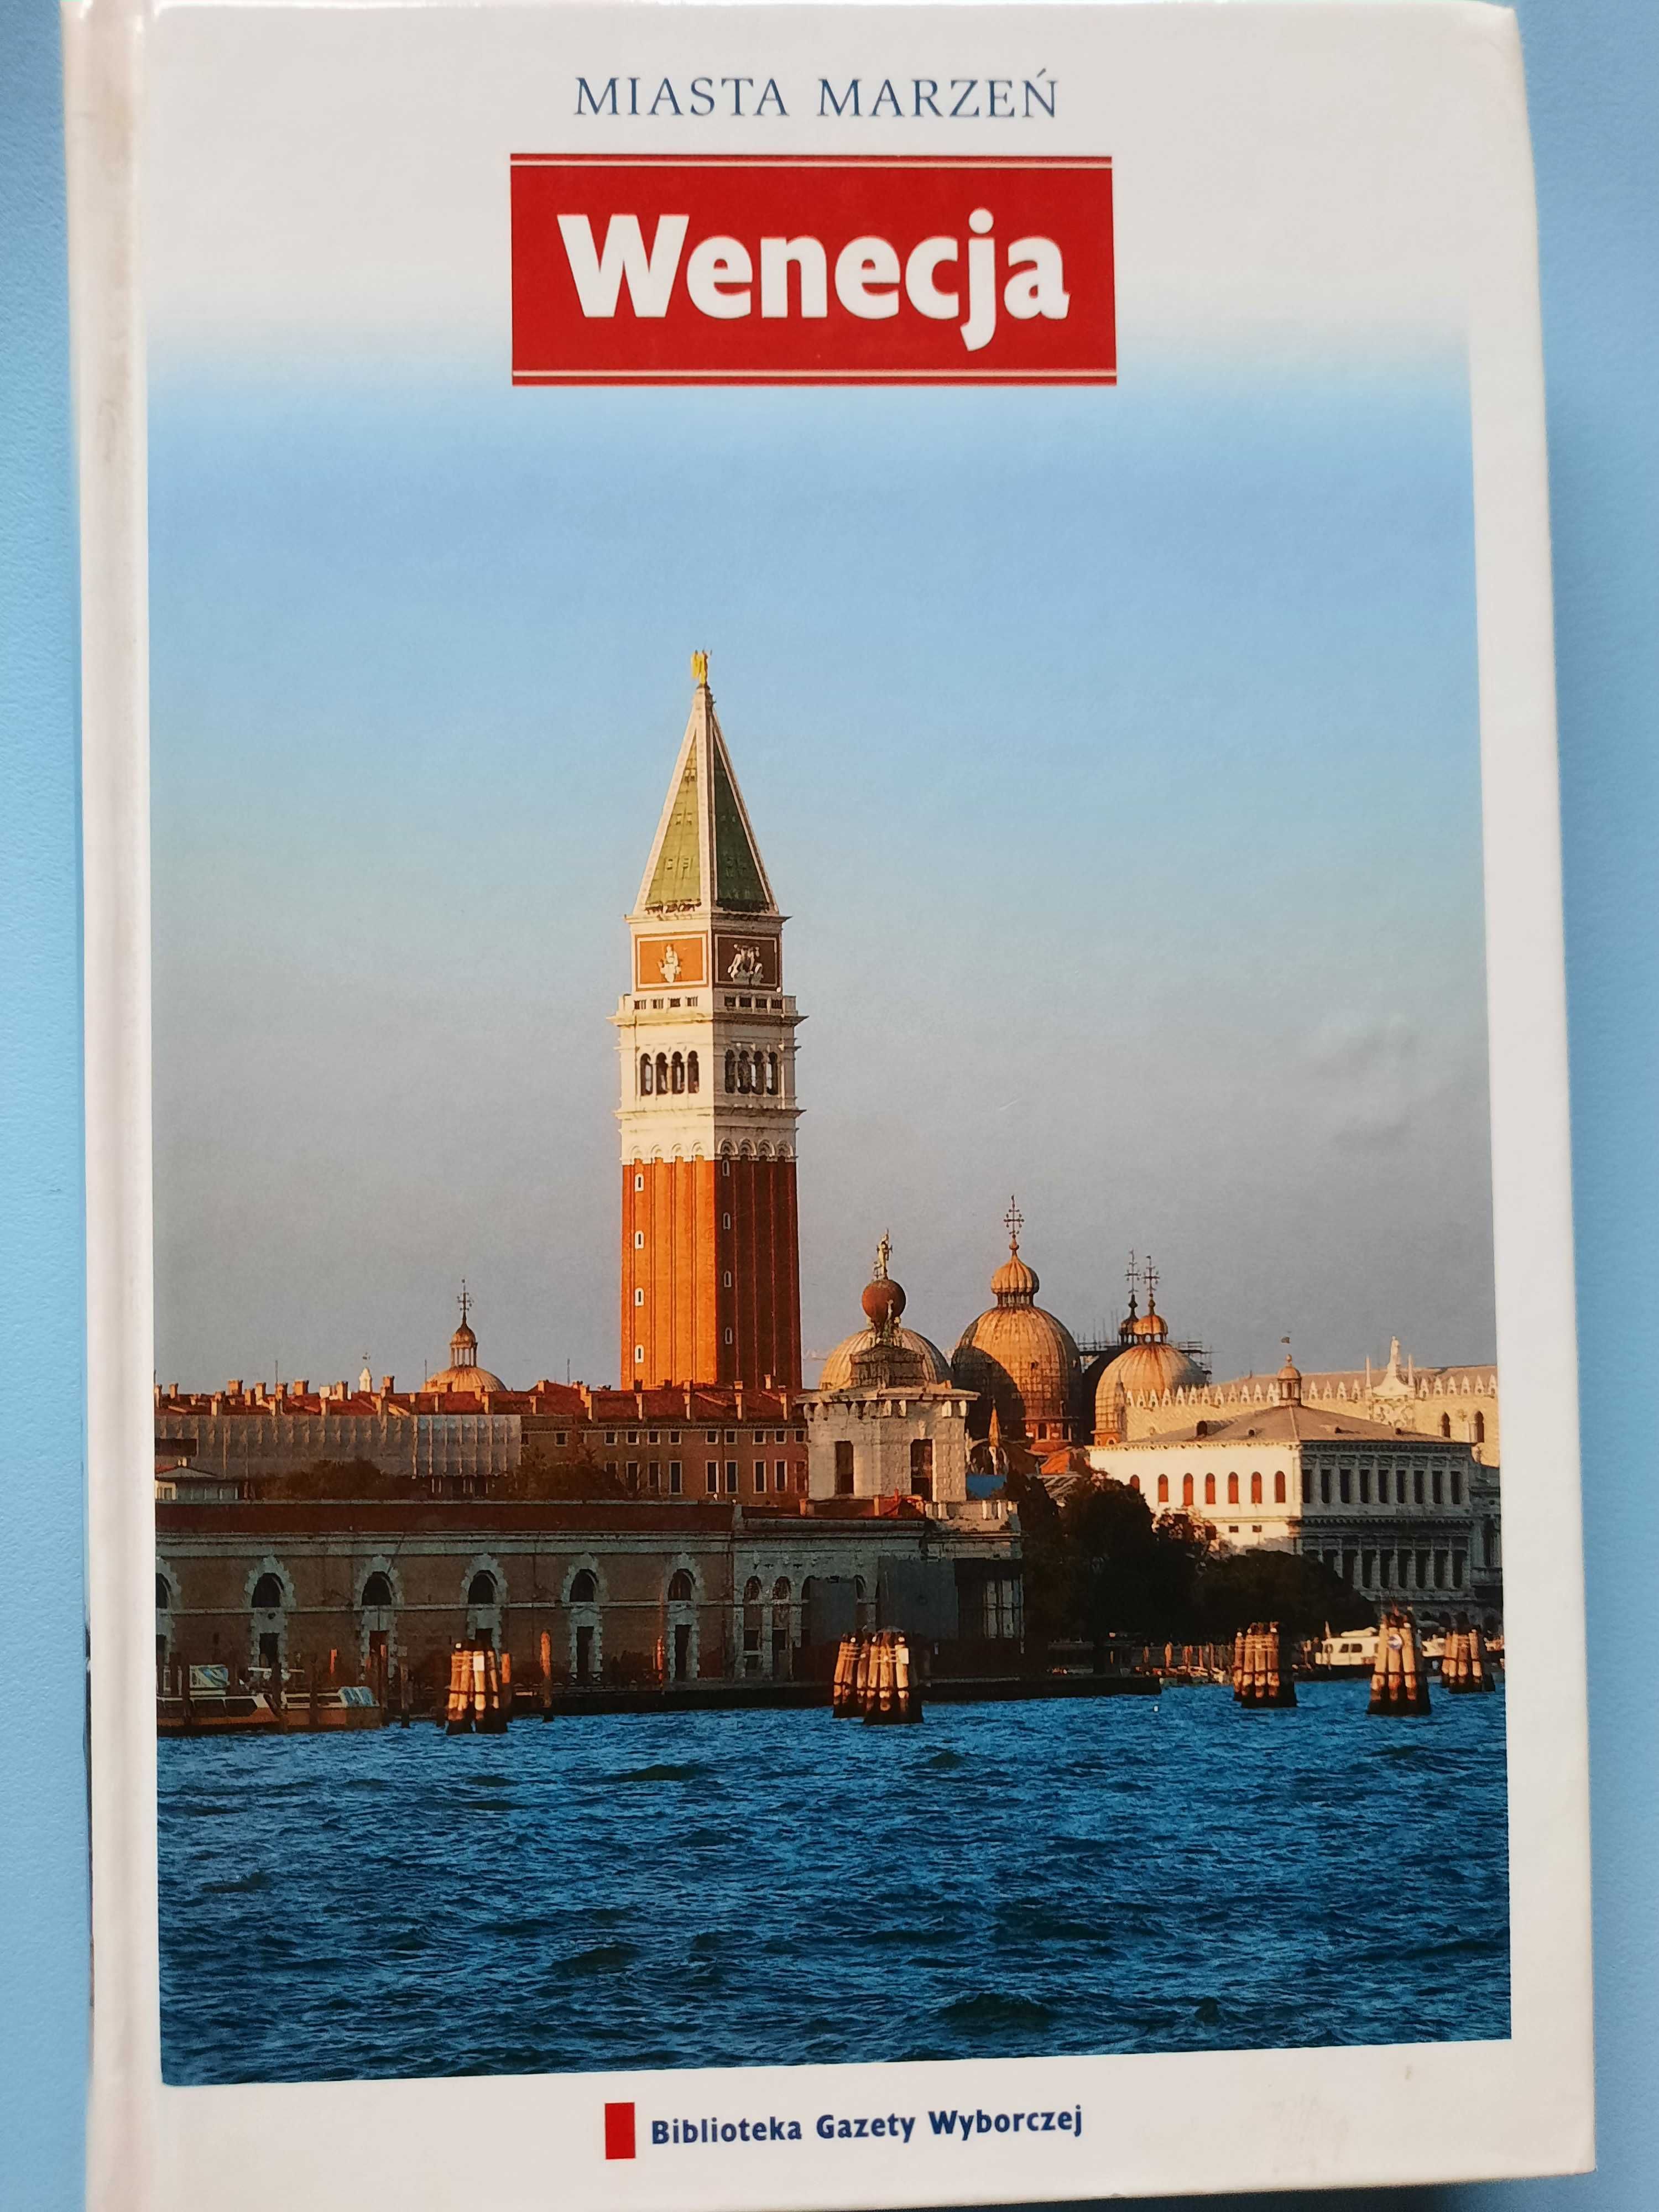 Miasta marzeń - Wenecja